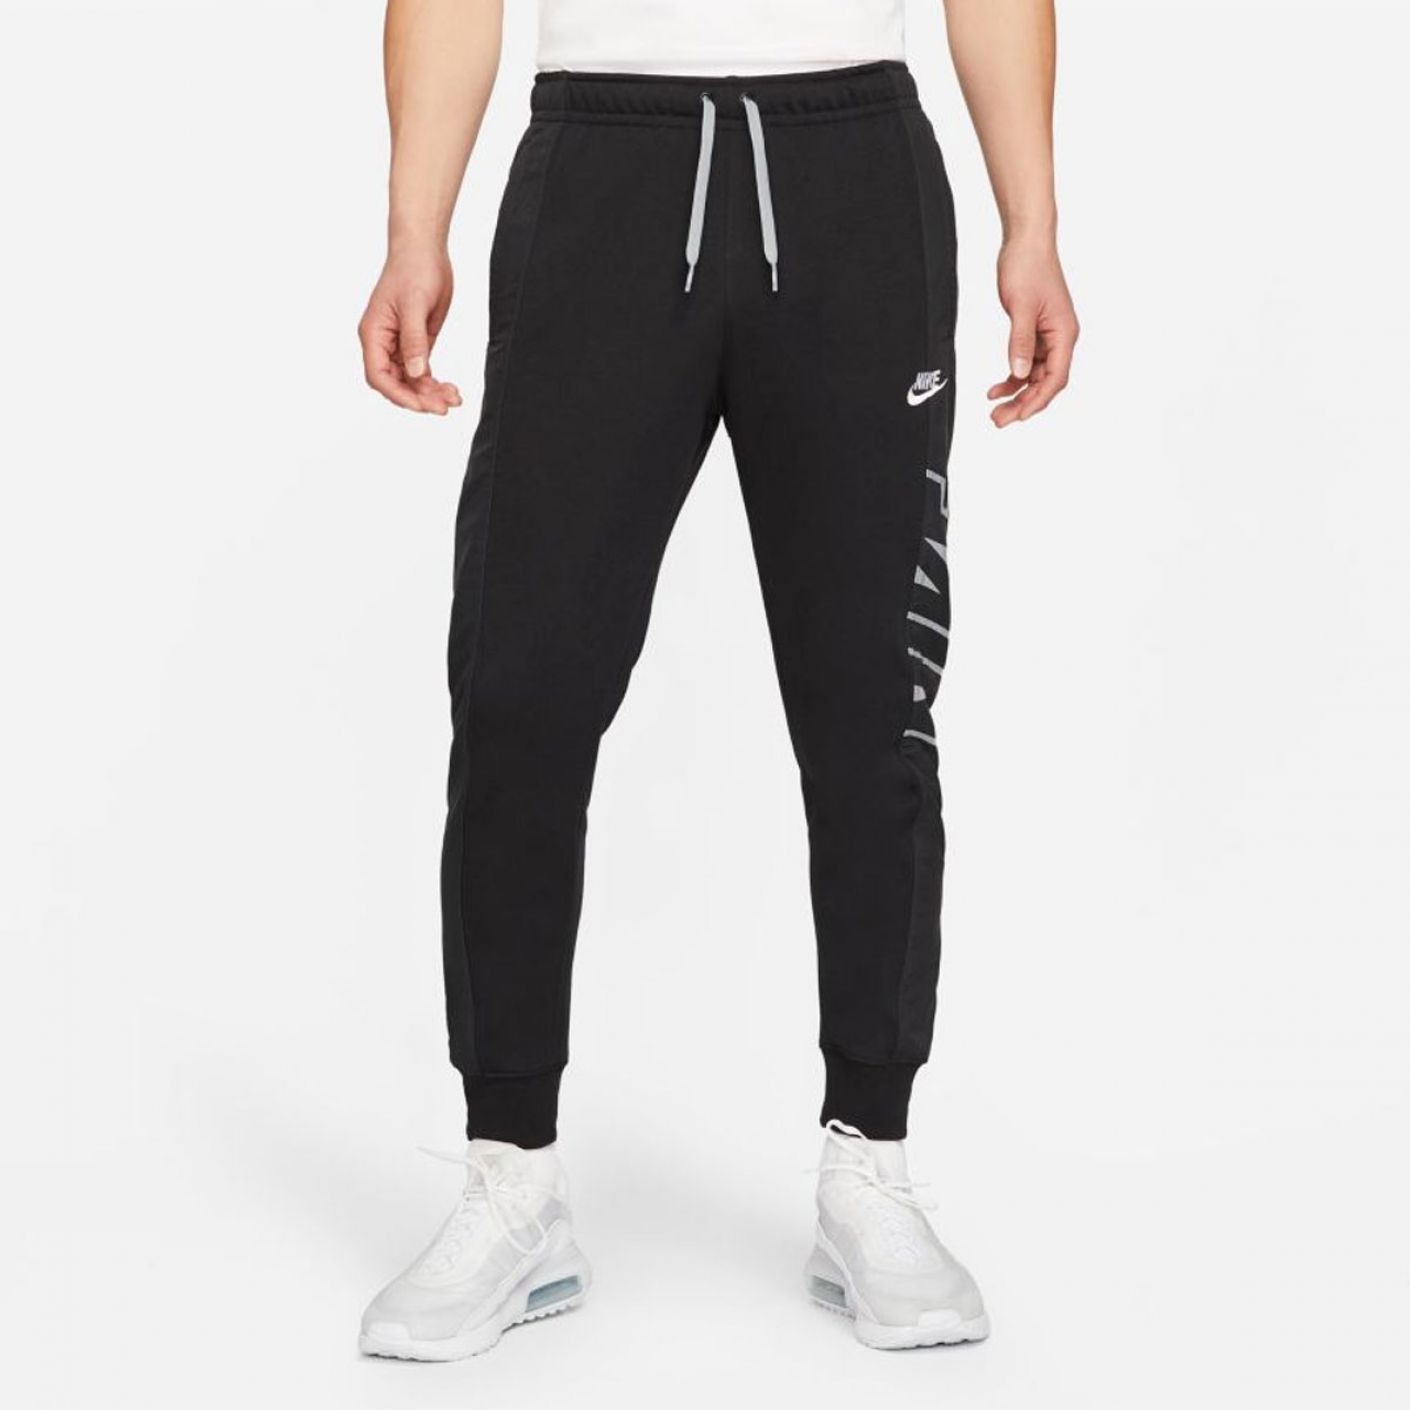 Nike Sportswear Pants Black Particle Gray White